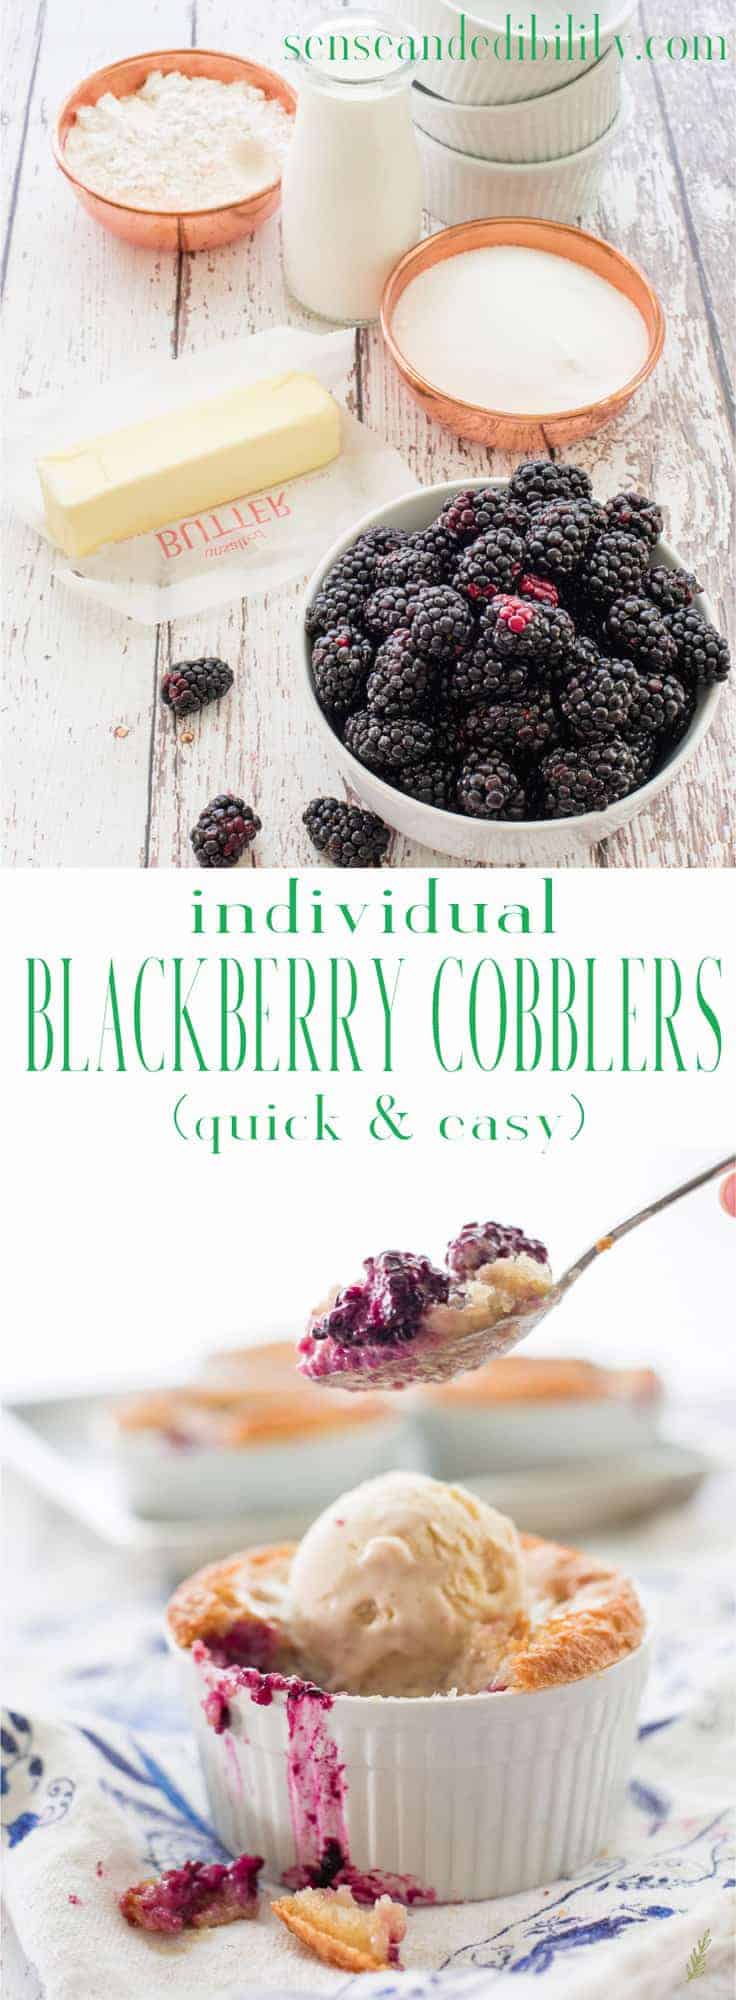  Les cordonniers aux mûres servent les fruits de l'été de la manière la plus délicieuse. Garni d'une croûte de pâte, ce dessert est la fin sucrée parfaite de vos repas d'été. N'oubliez pas une généreuse boule de crème glacée pour servir avec! #blackberrycobbler #cobbler #berrycobbler #dessert #alamode via @ediblesense 